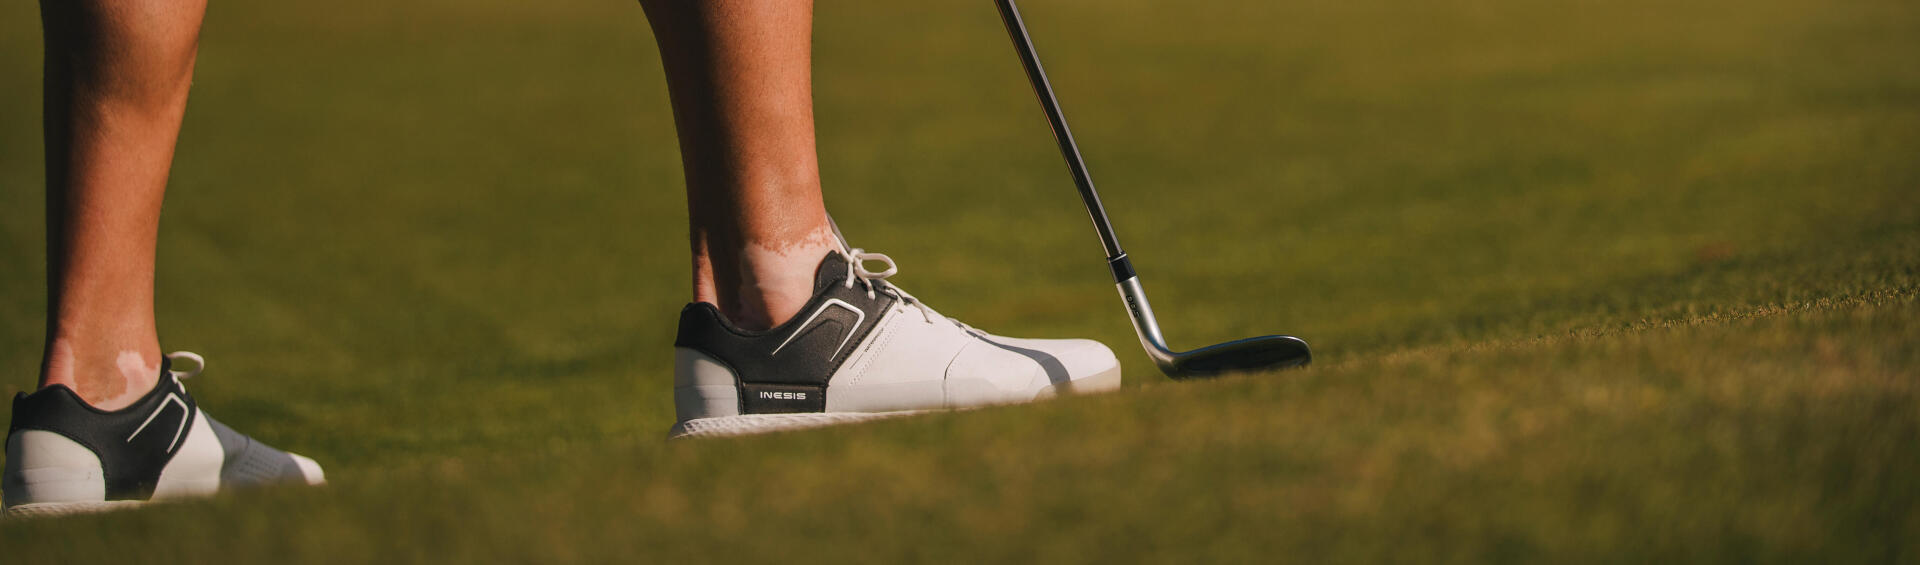 Come scegliere le scarpe da golf?